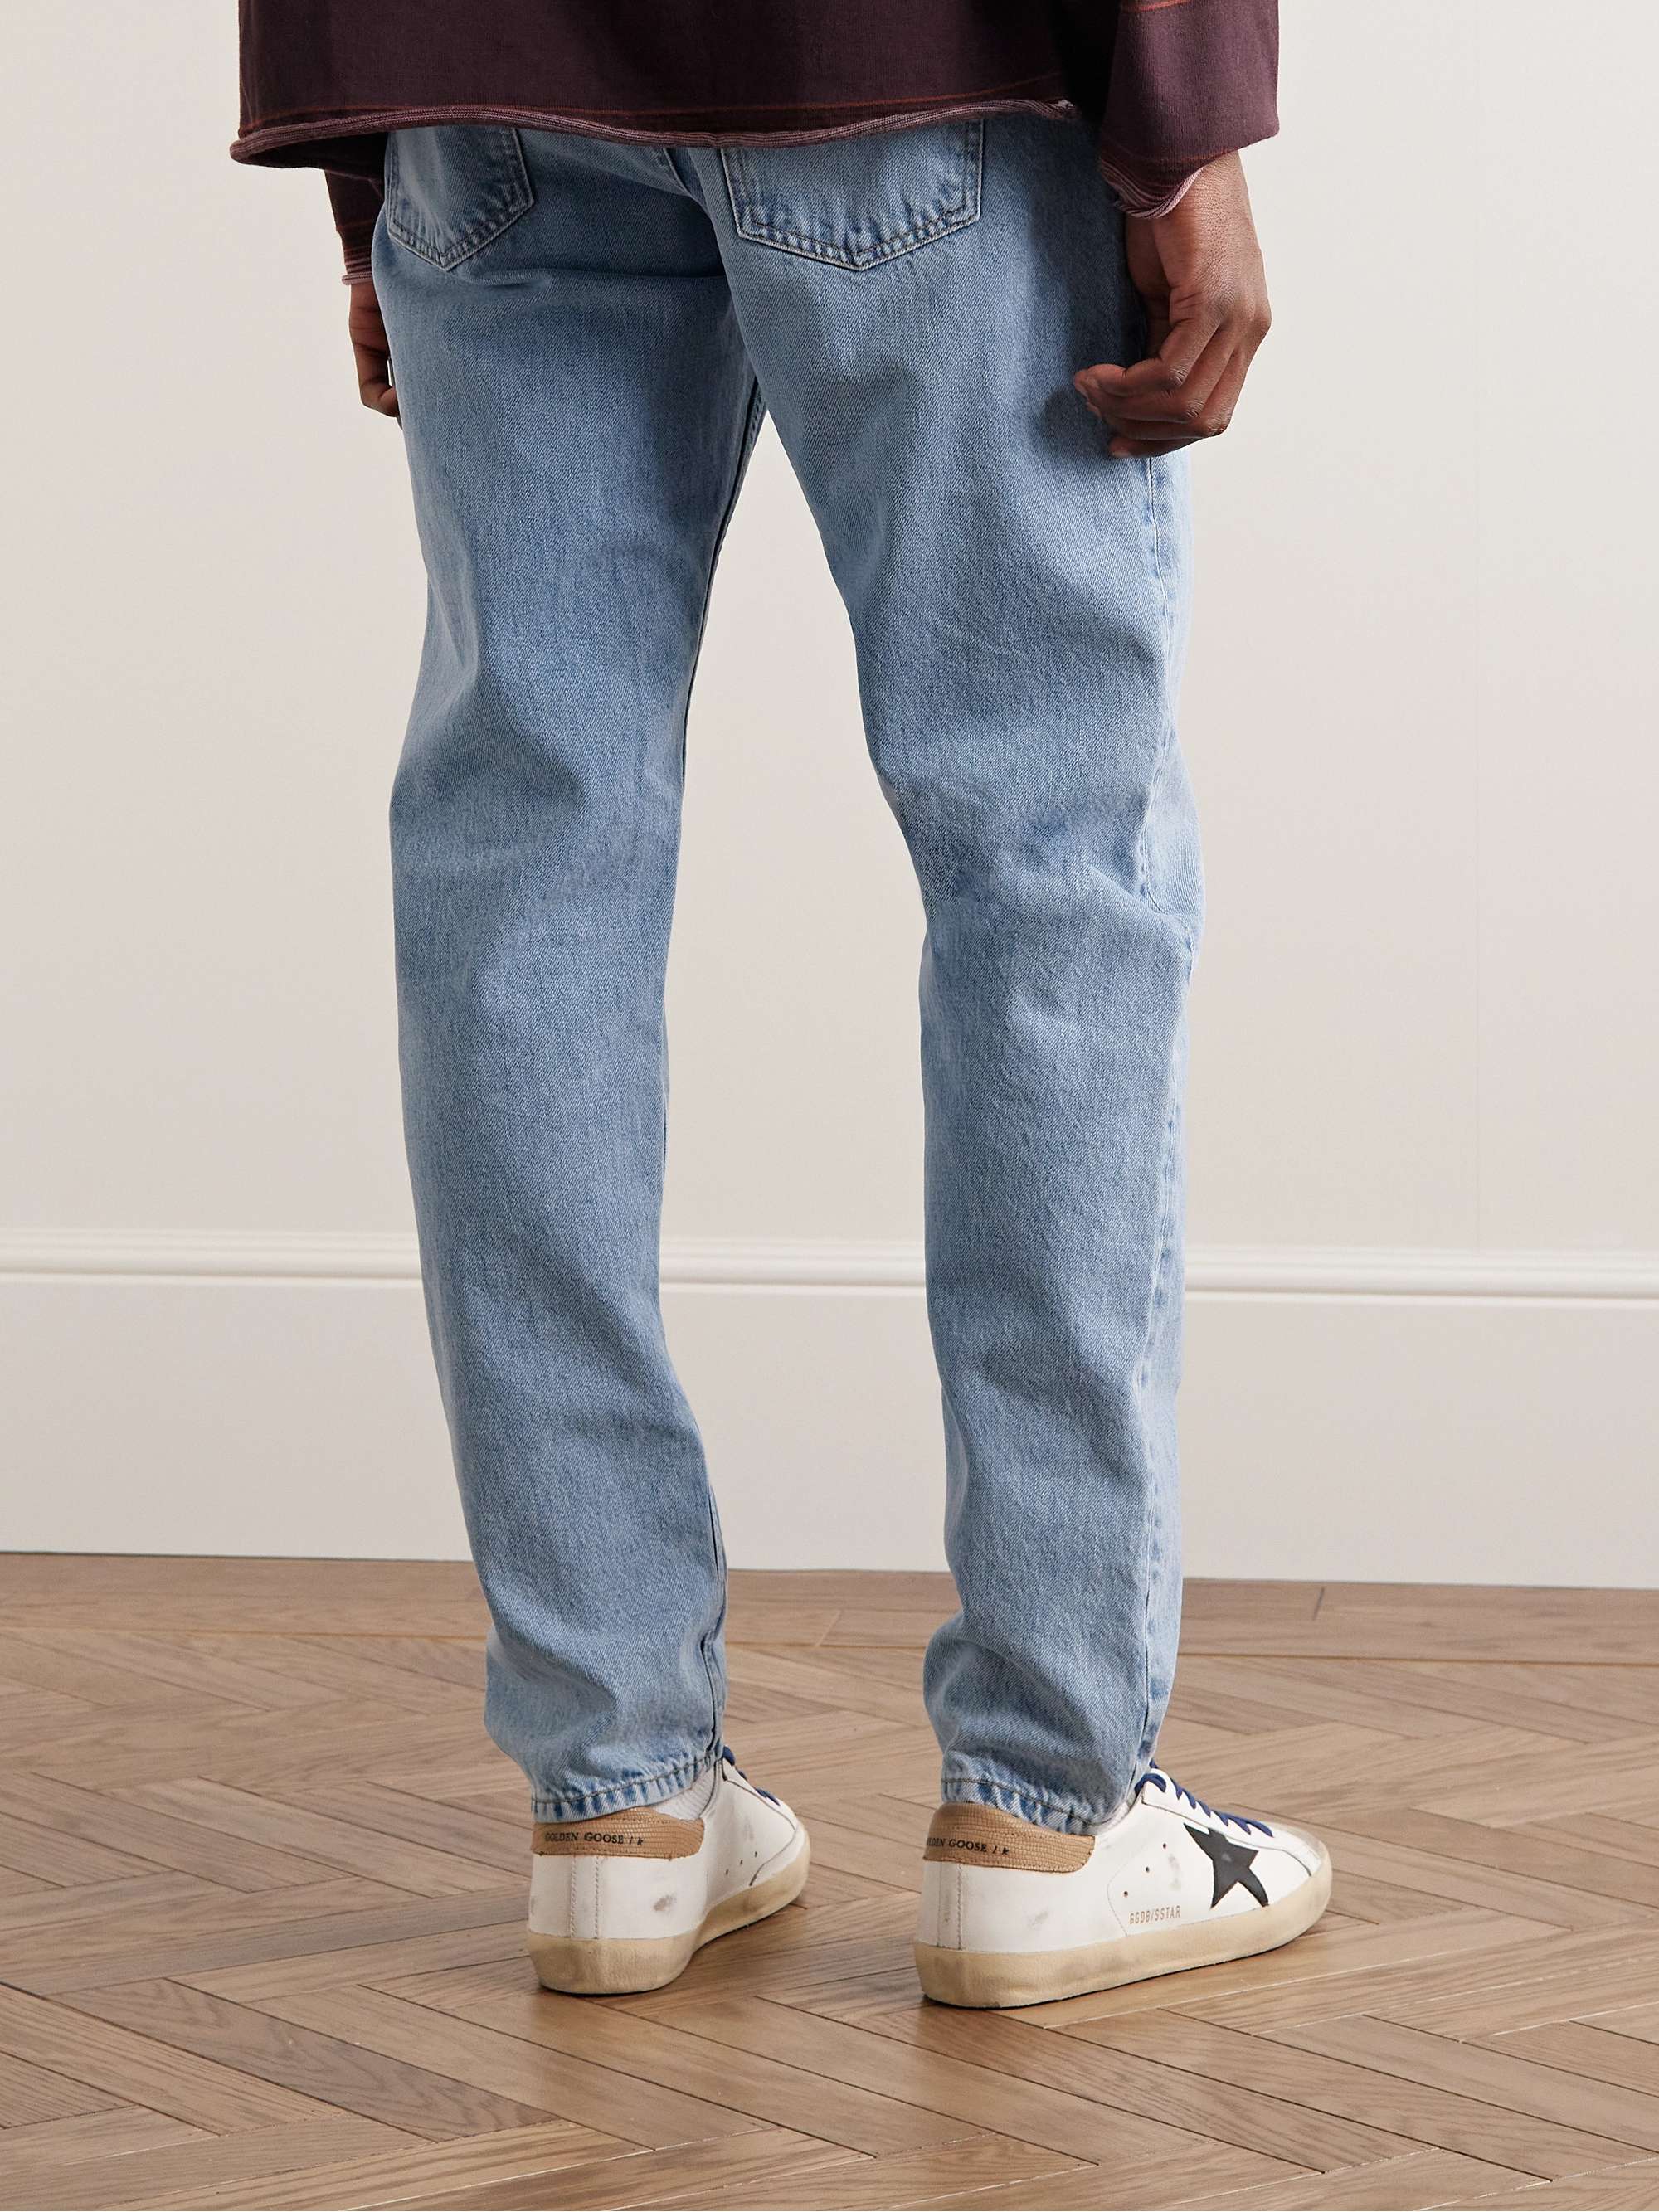 NUDIE JEANS Steady Eddie II Slim-Fit Tapered Jeans | MR PORTER